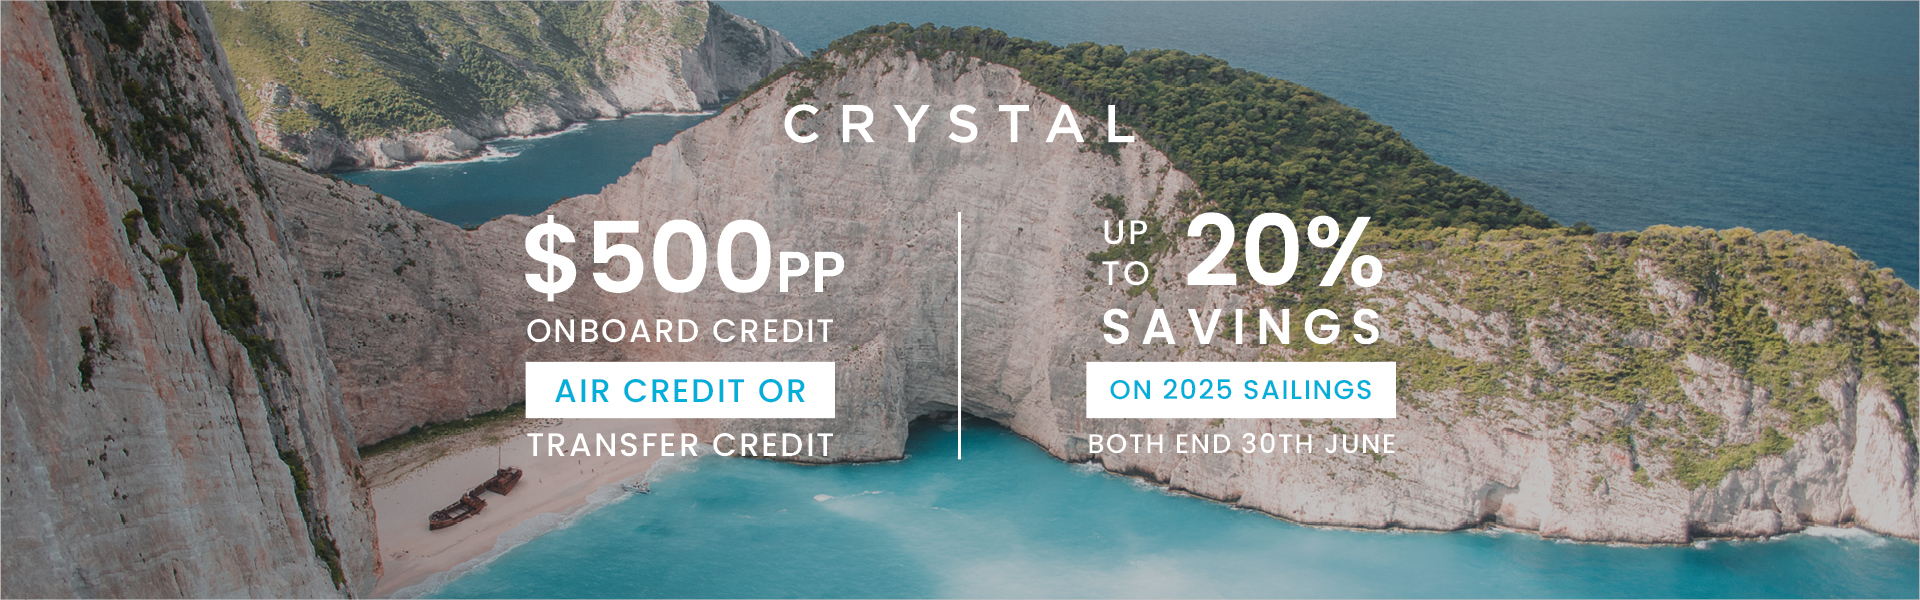 Crystal - Huge Savings and Free Onboard Credit